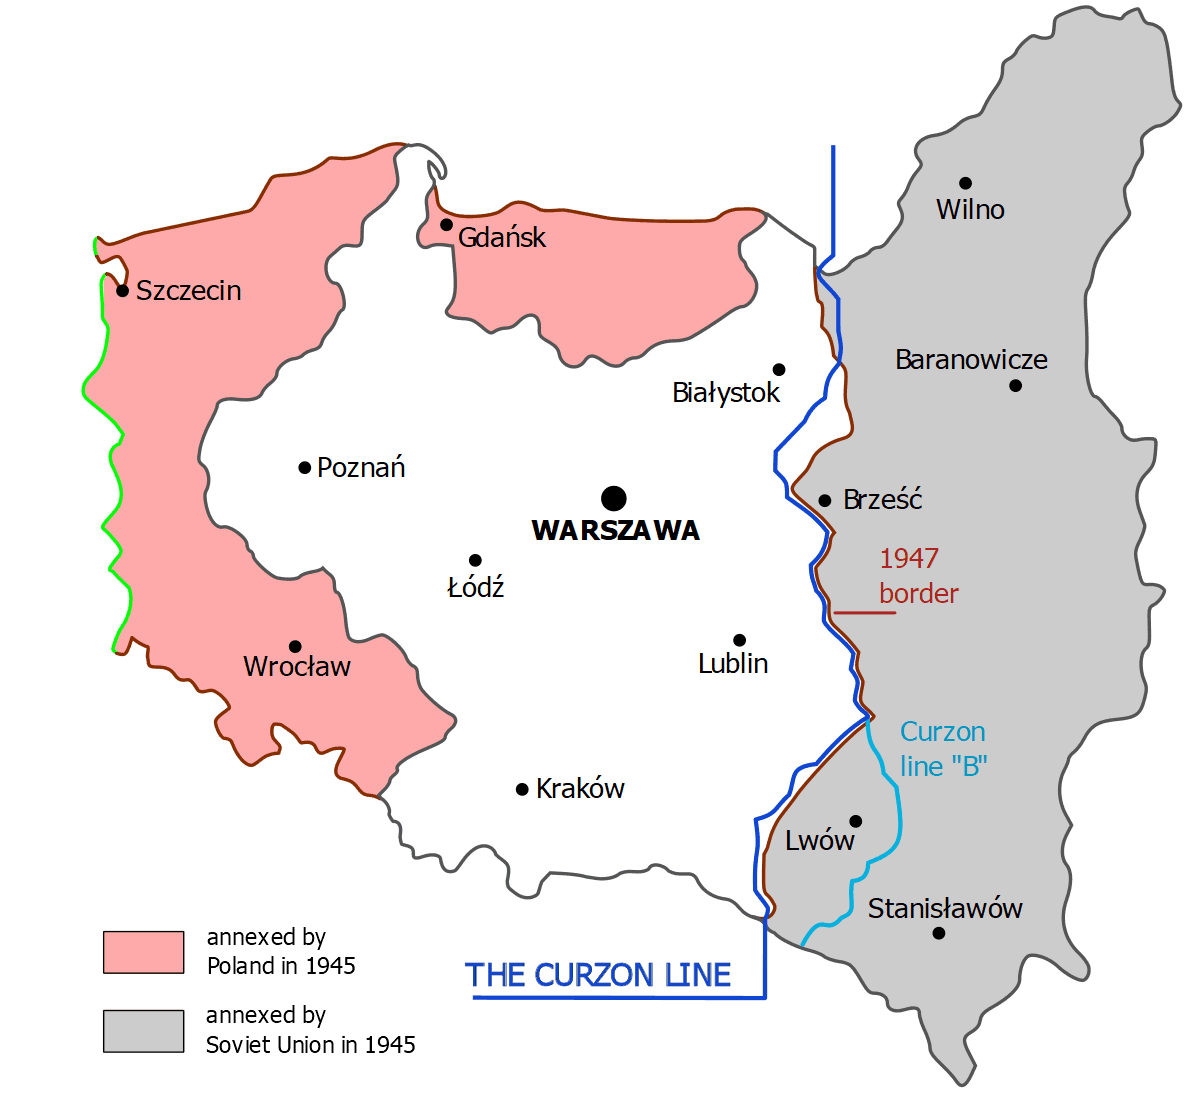 Konturowa mapa Polski z zaznaczonymi granicami współczesnymi oraz sprzed drugiej wojny światowej, z widocznymi obszarami utraconymi i zyskanymi w jej wyniku. Ponadto zaznaczono dwa warianty linii Curzona.